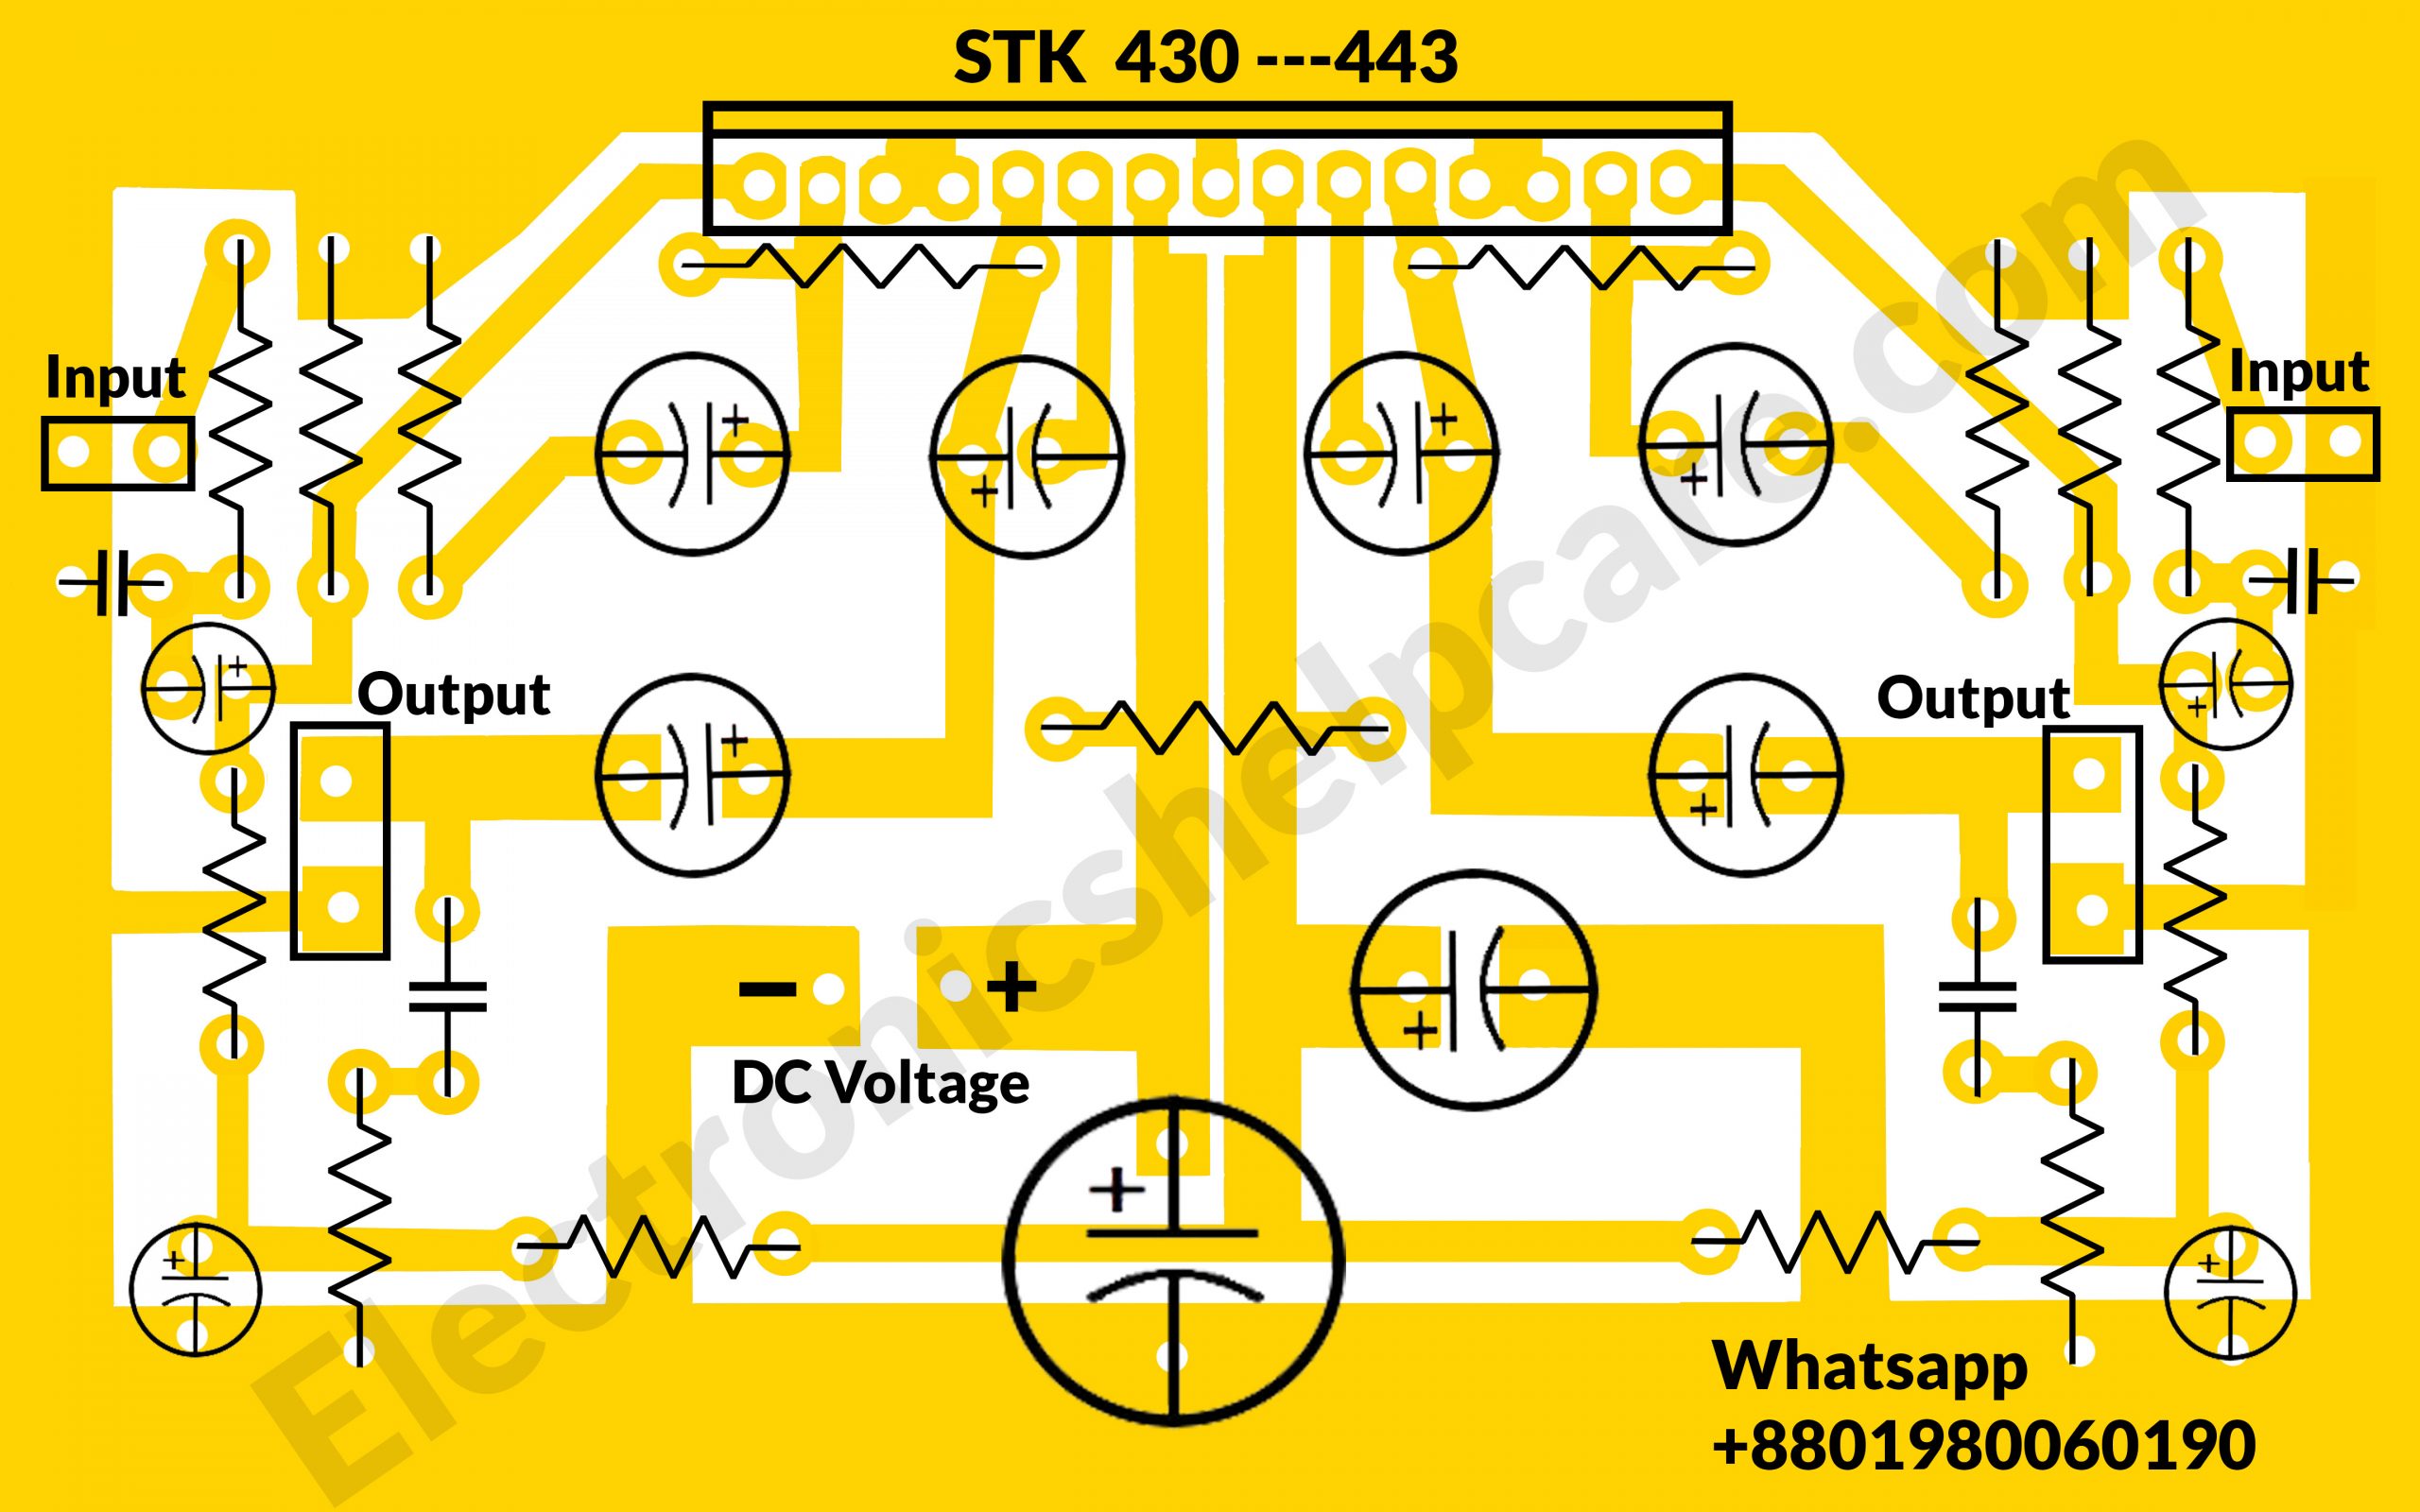  STK430-443 circuit diagram